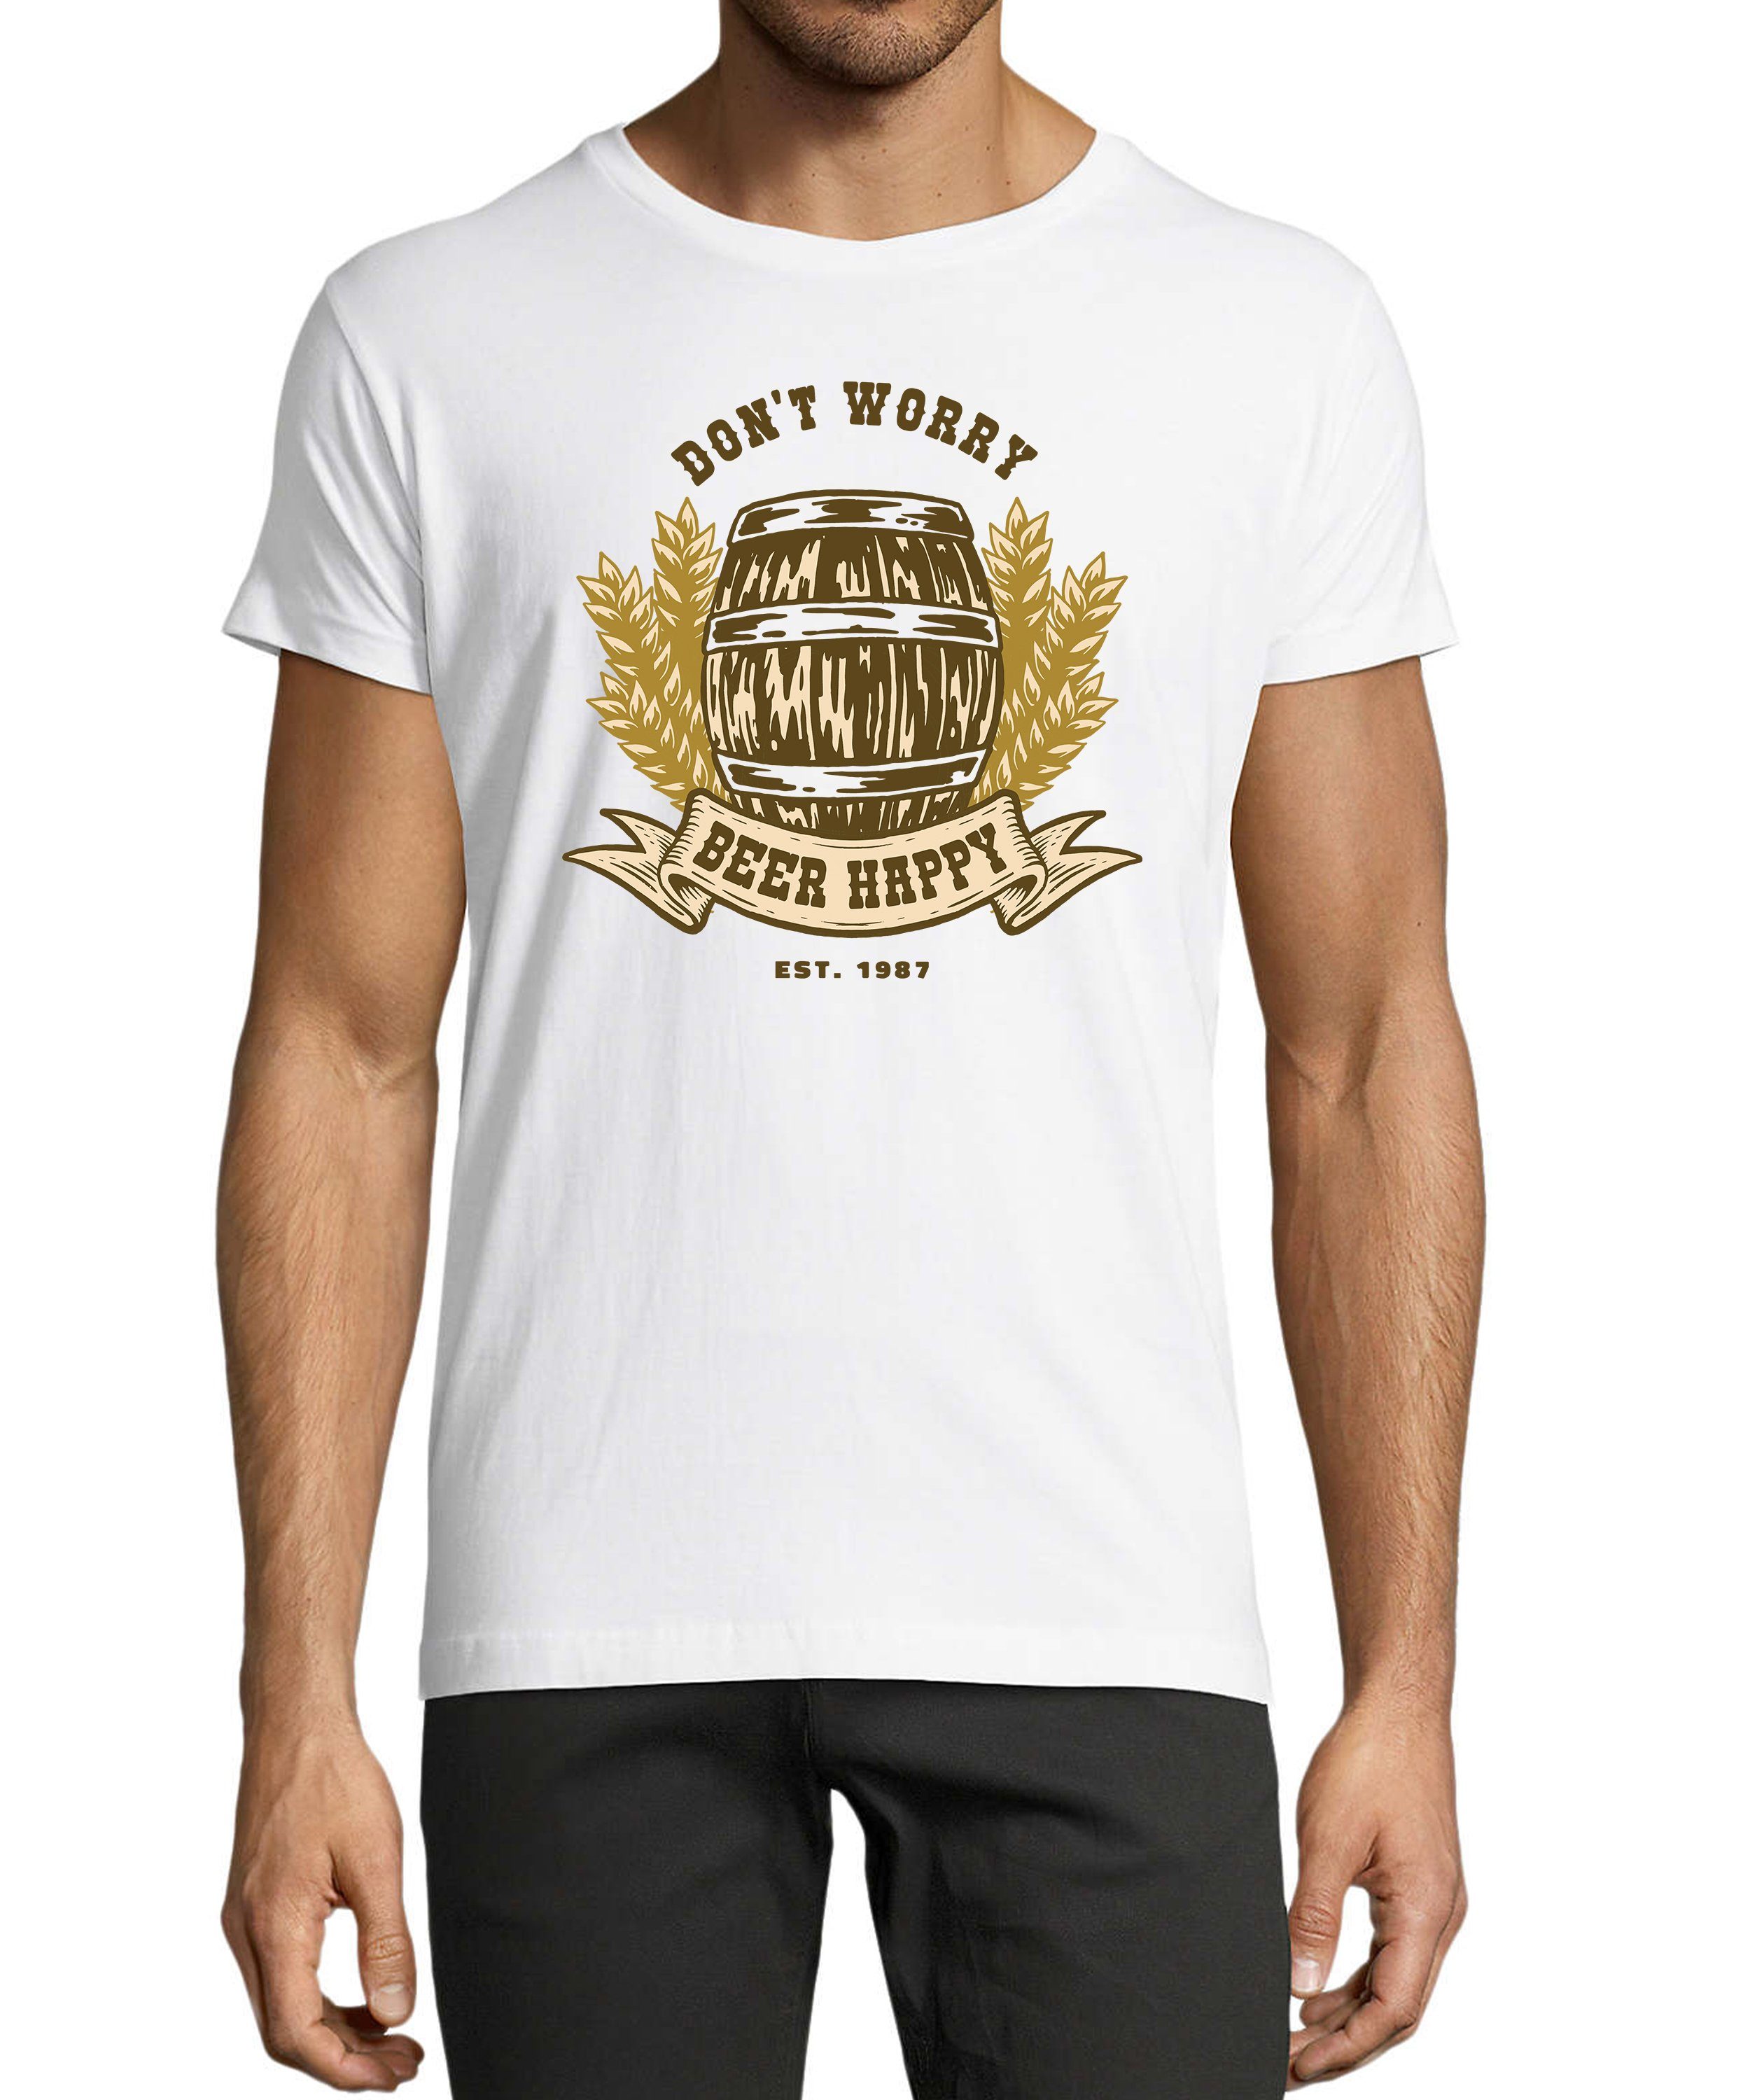 MyDesign24 T-Shirt Herren Regular - Shirt mit Spruch Baumwollshirt mit Fit, Oktoberfest weiss Bierfass print i301 Aufdruck